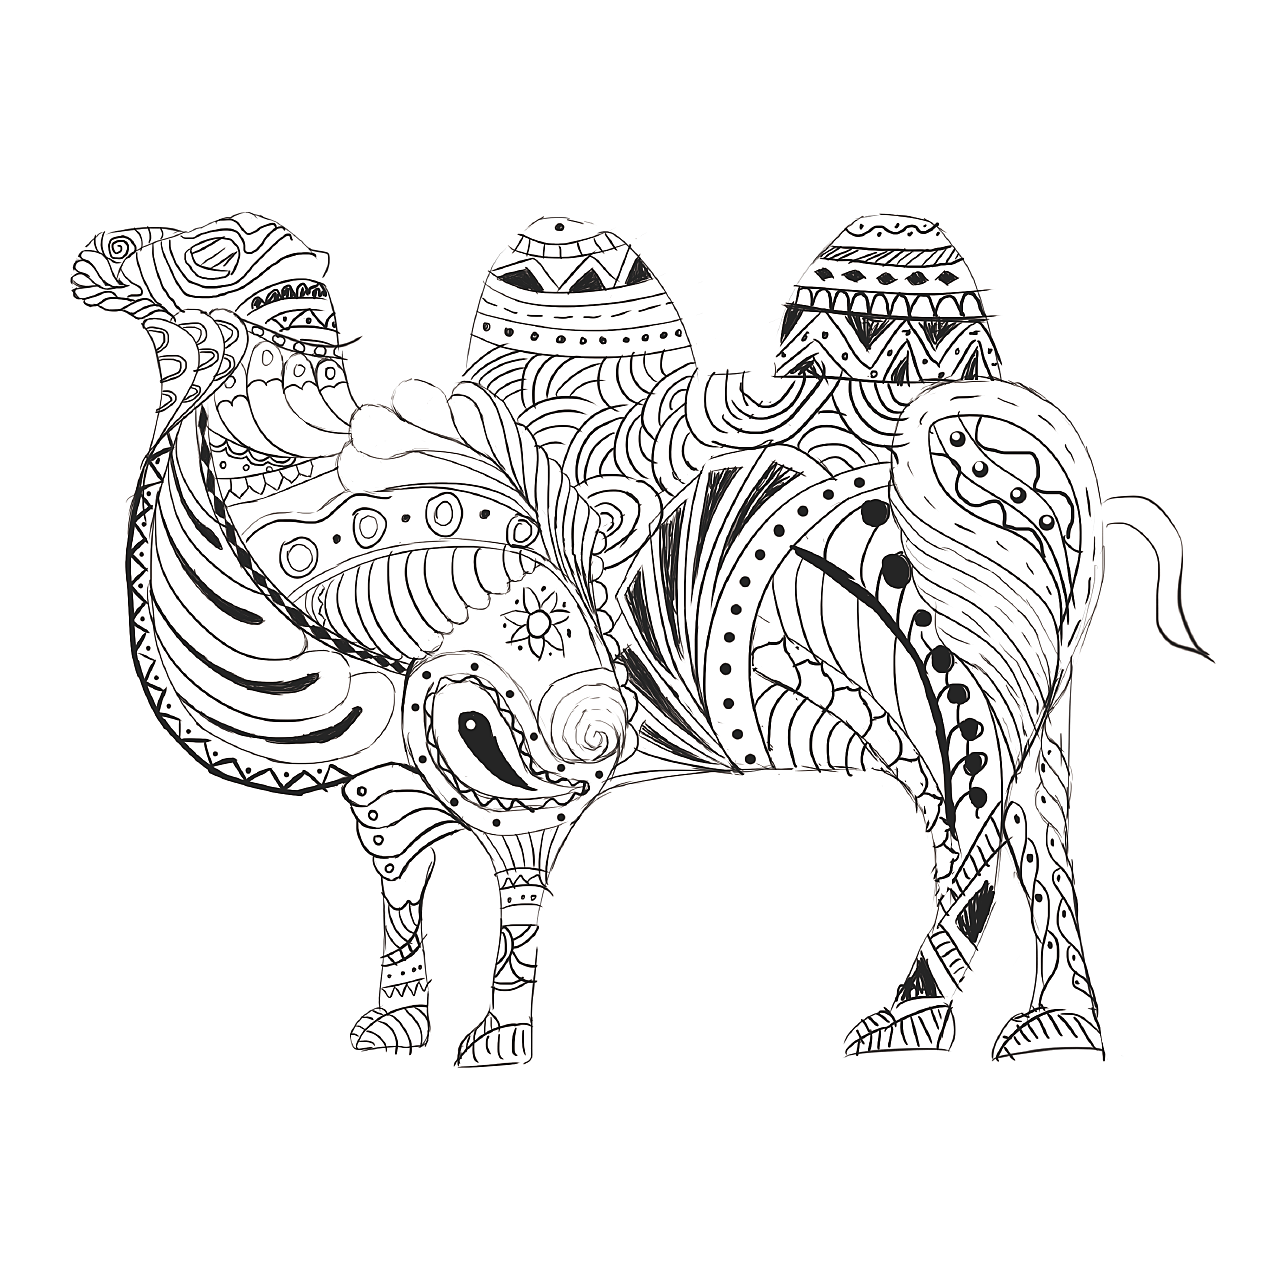 骑骆驼 埃及 西奈 沙漠 骆驼 贝都因人图片下载 - 觅知网